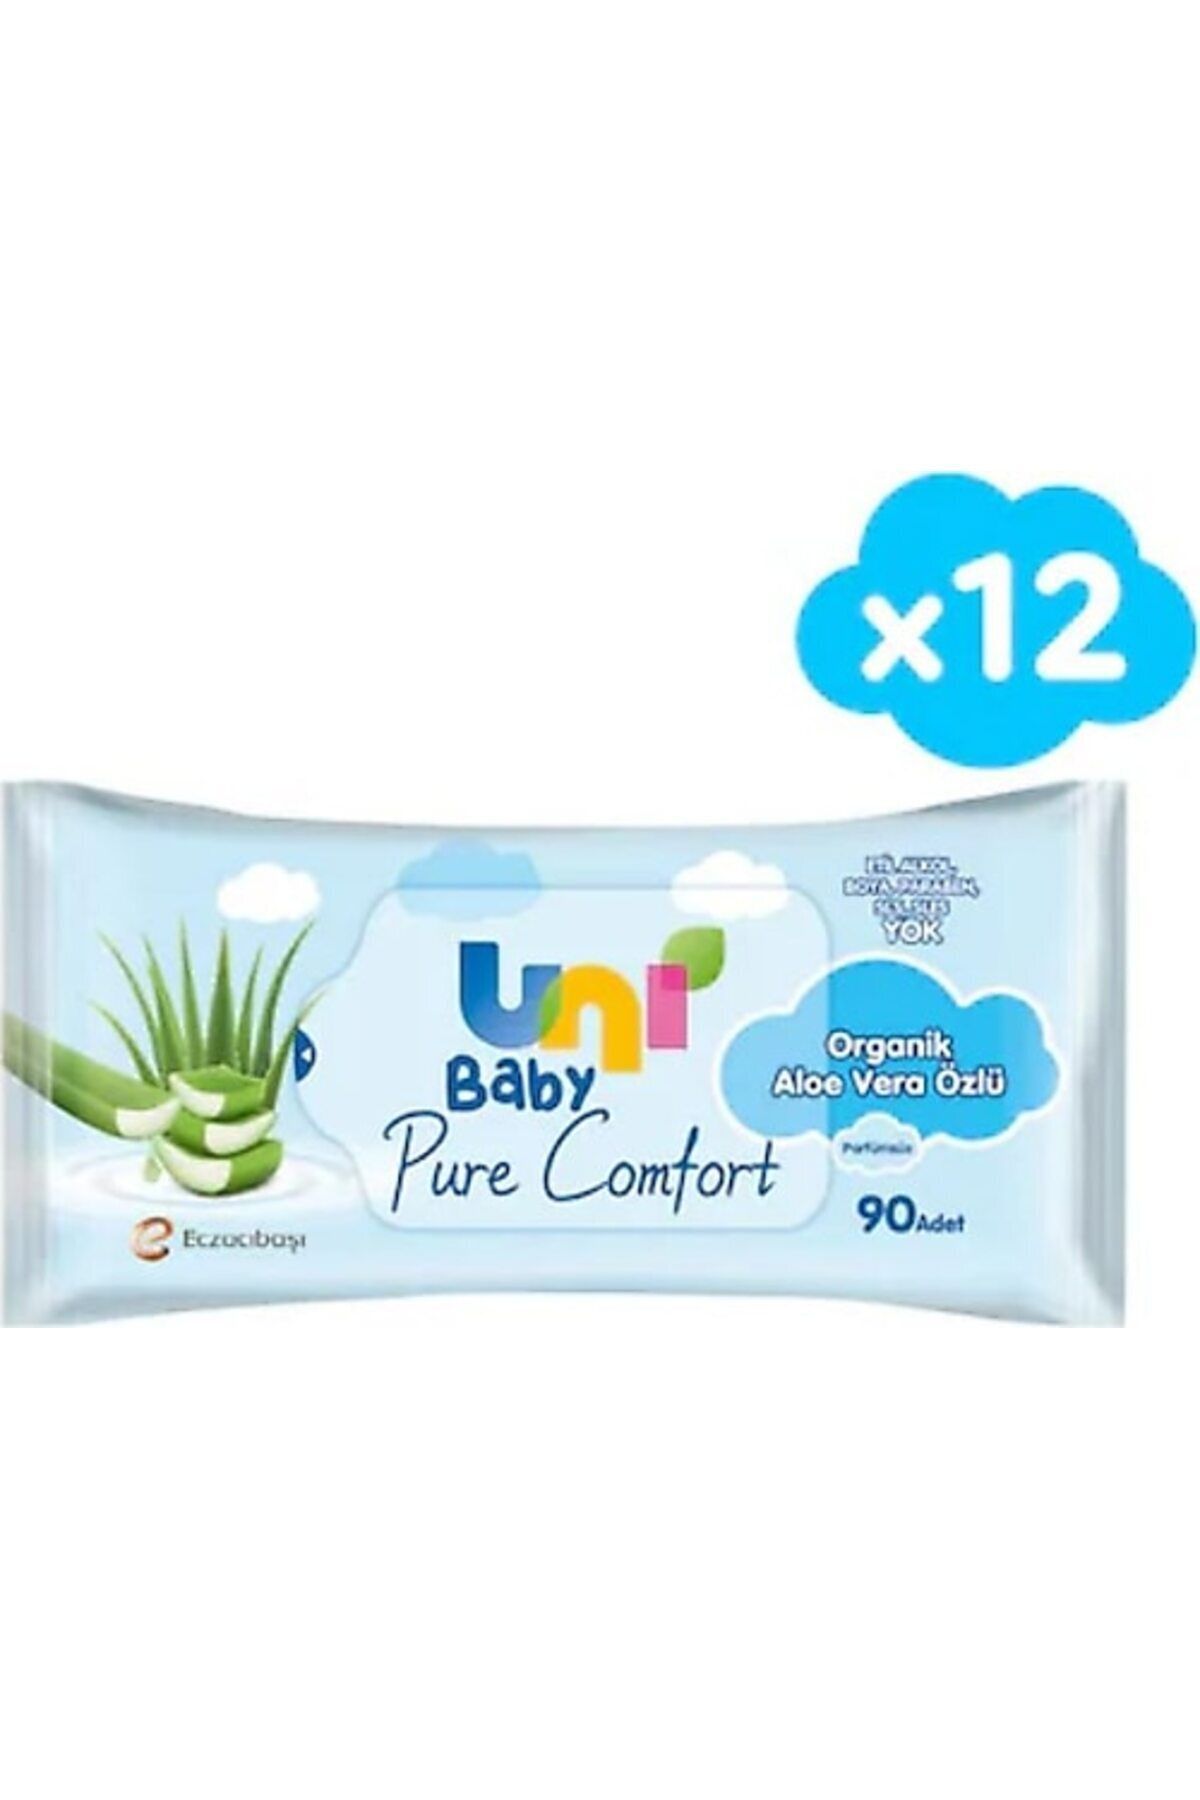 Uni Baby Pure comfort Organik Aloe vera özlü Islak mendil